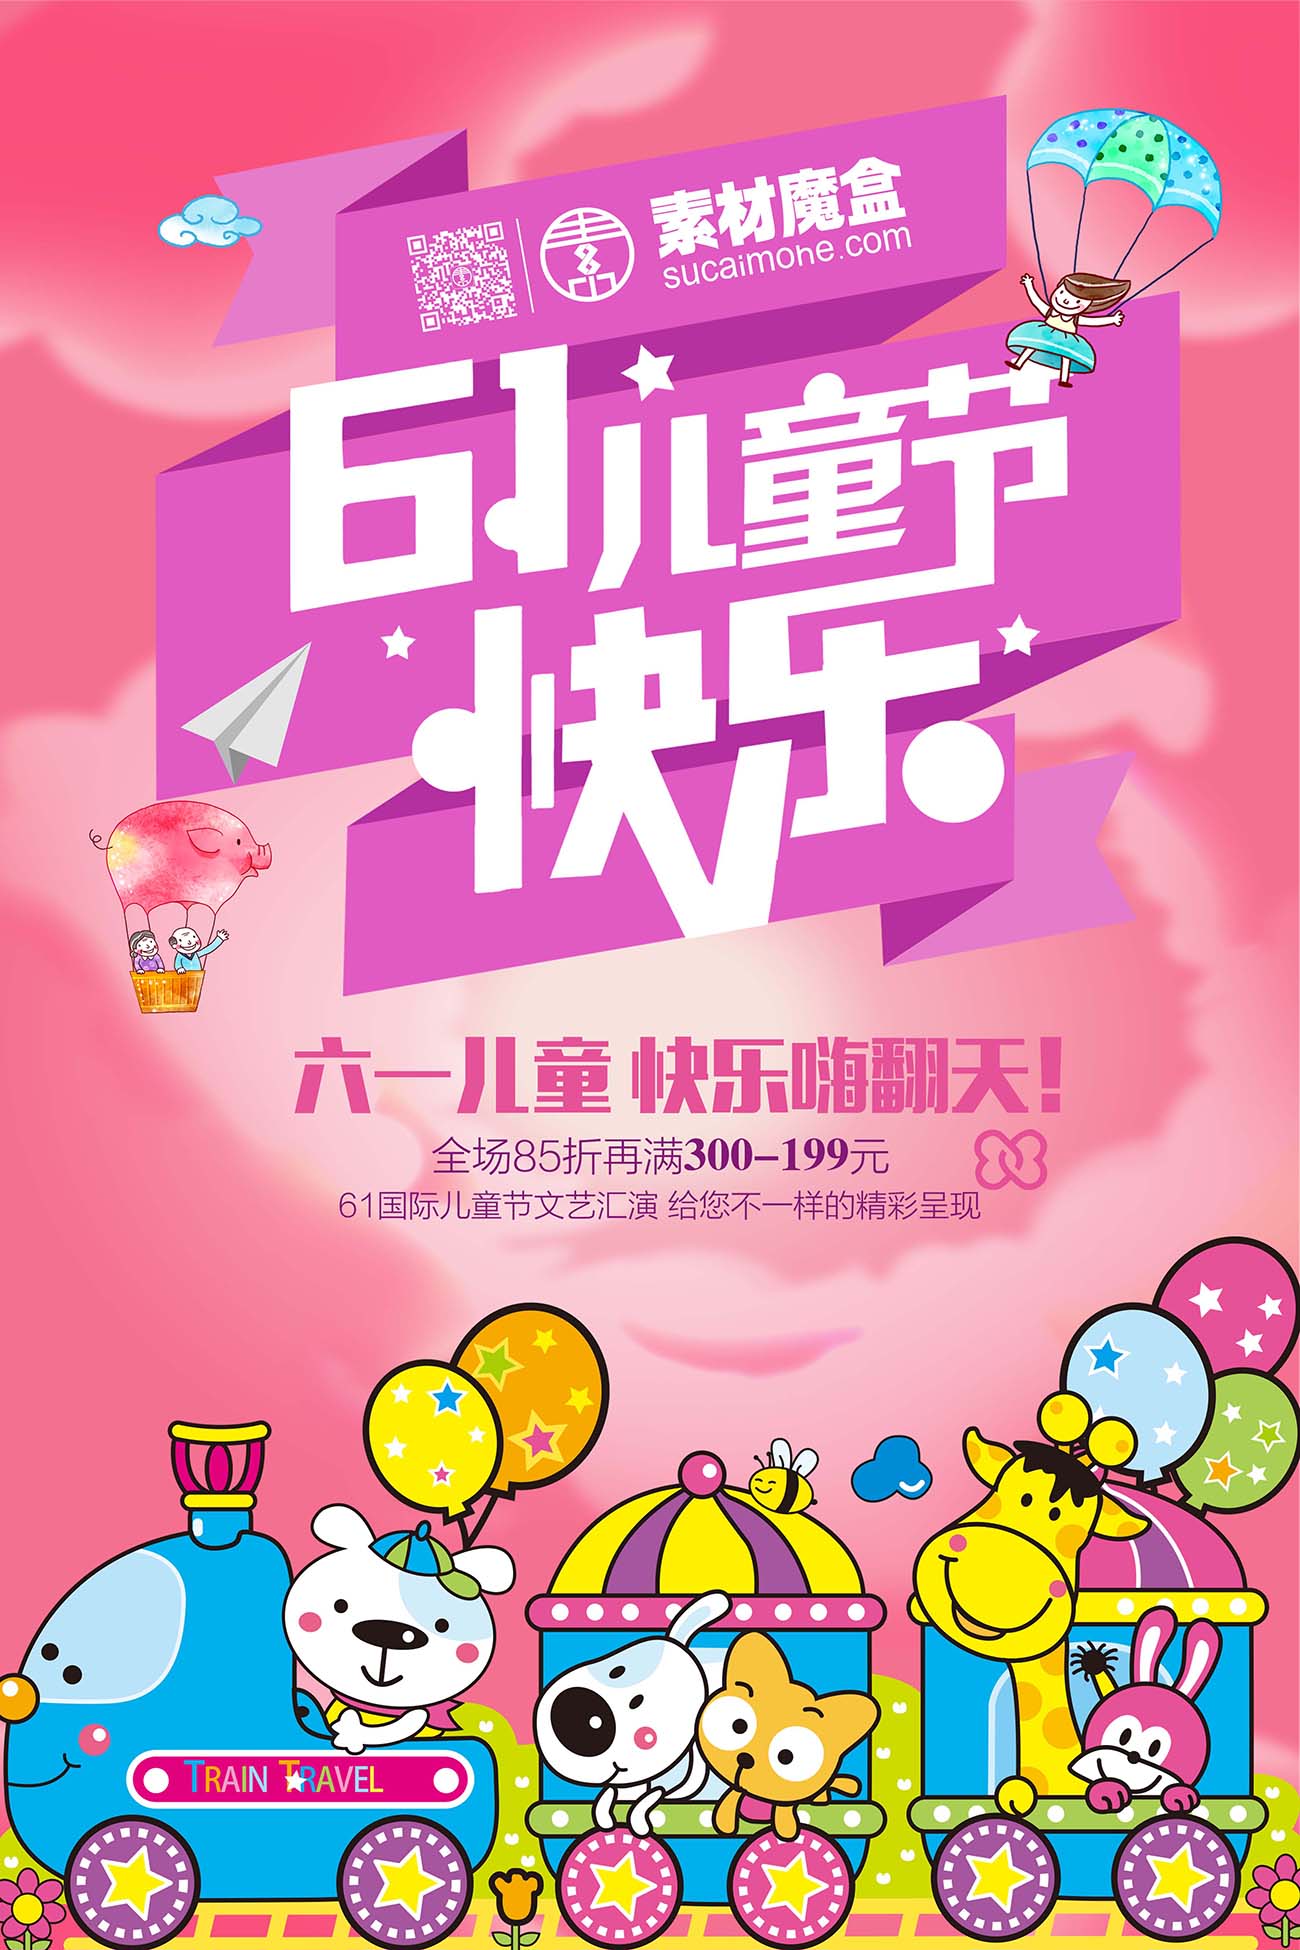 61六一儿童节快乐嗨翻天活动海报设计PSD源文件